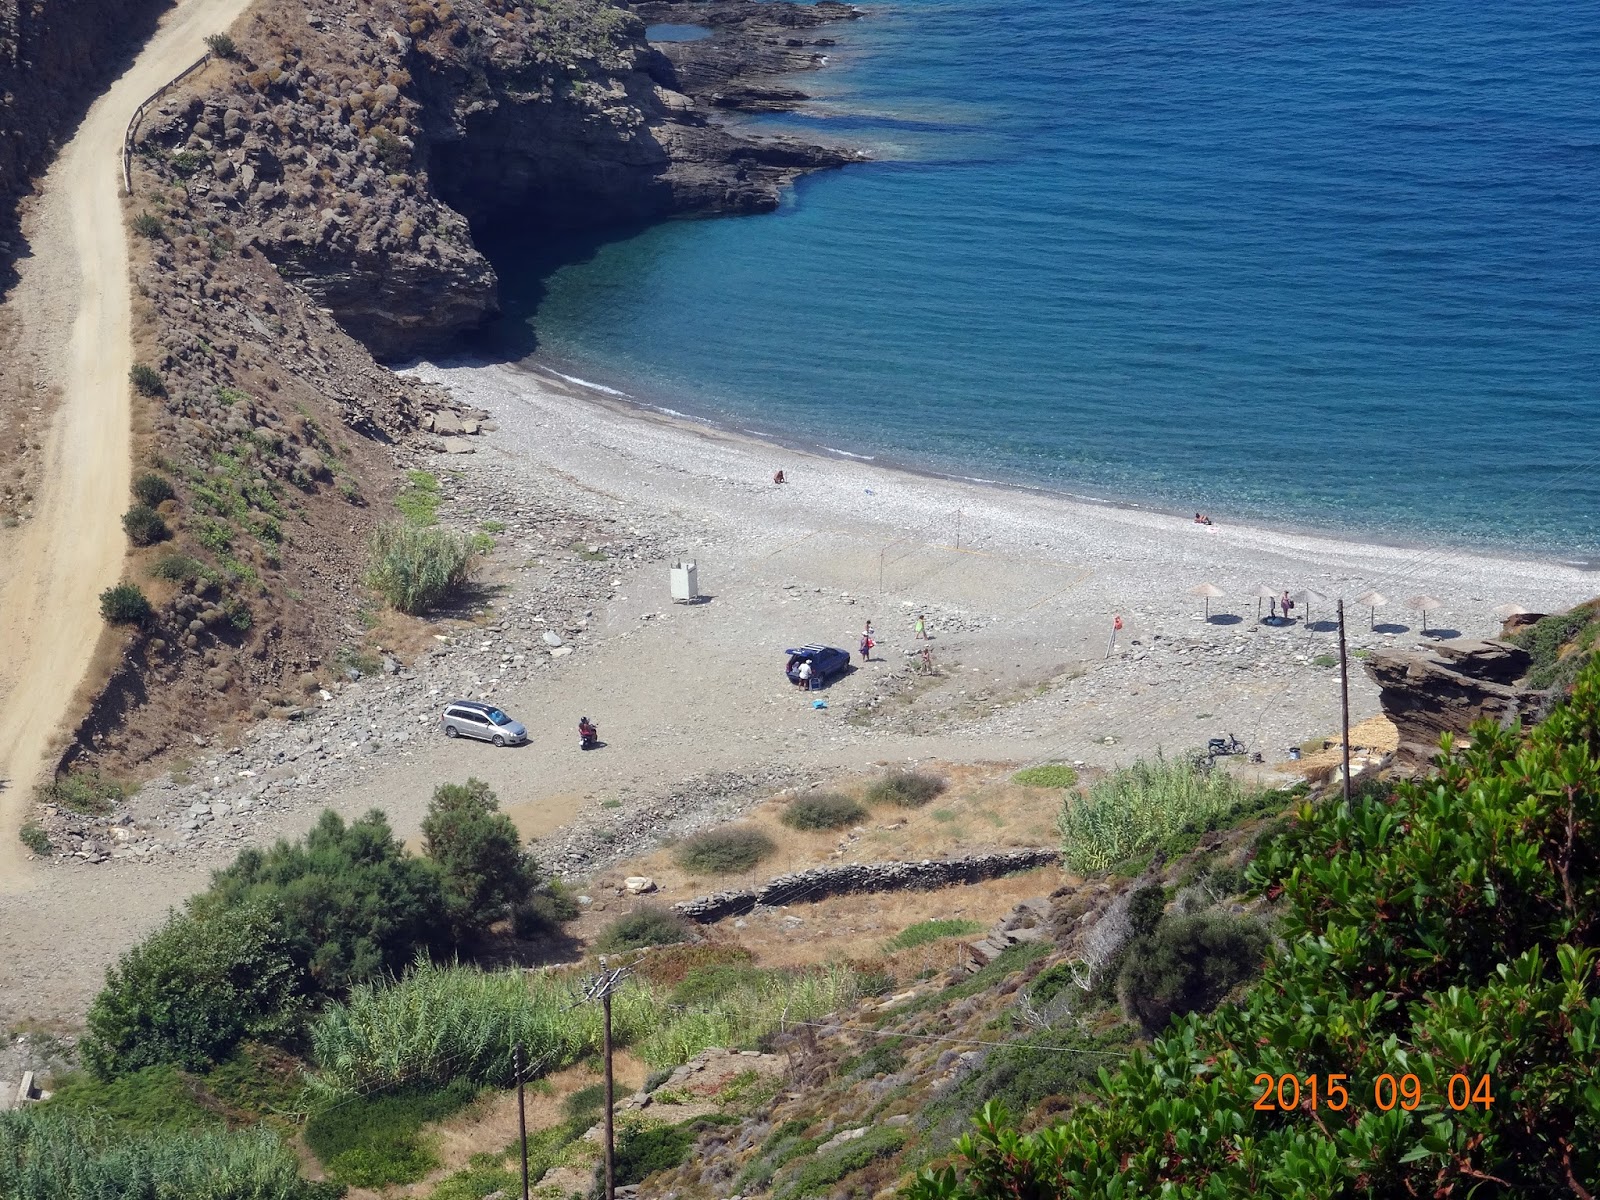 Aris beach'in fotoğrafı gri çakıl taşı yüzey ile